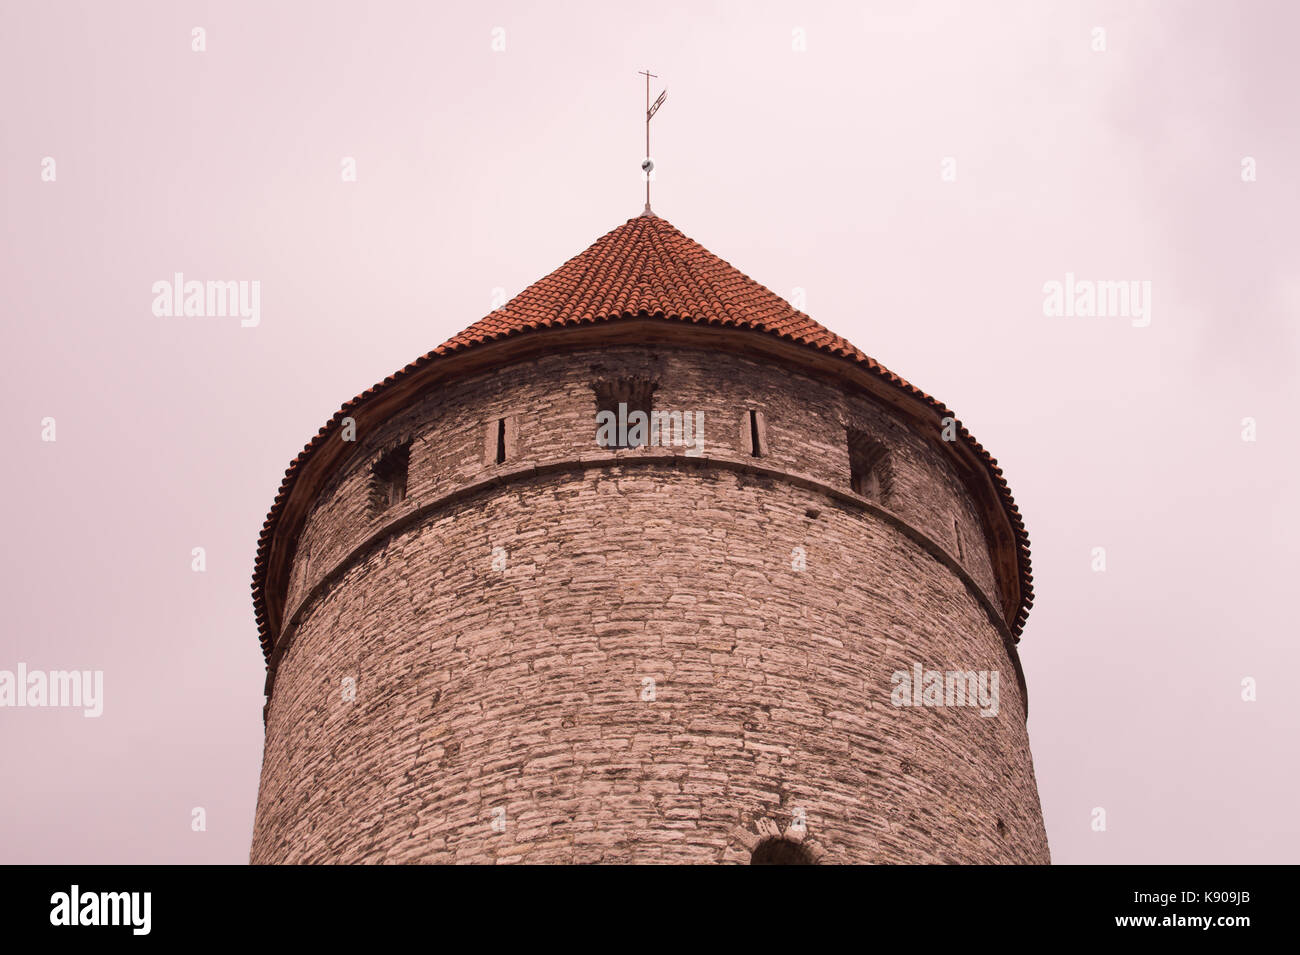 Old castle tower Tallinn Estonia Stock Photo